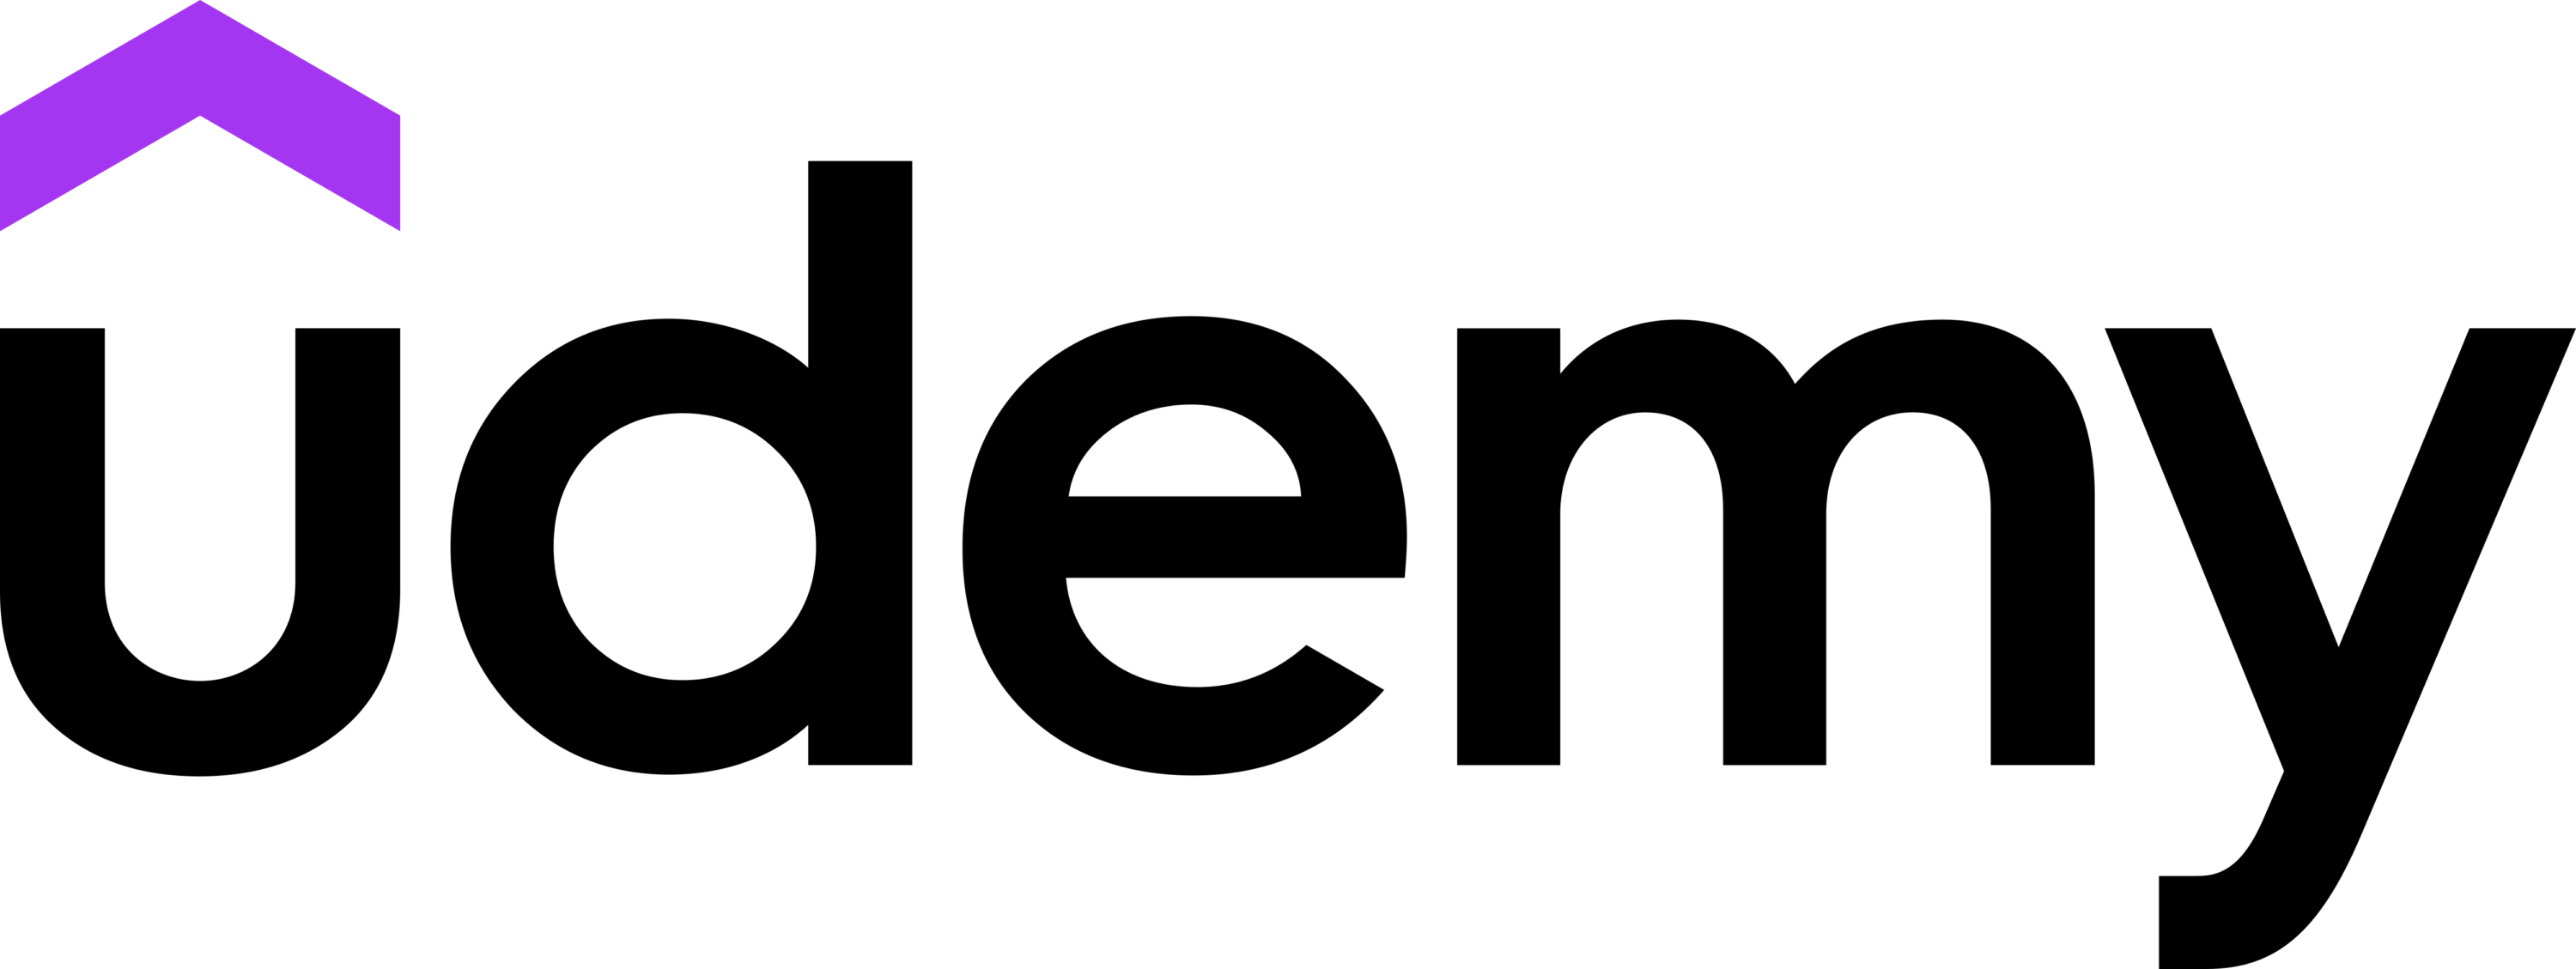 Udemy full Logo 2021